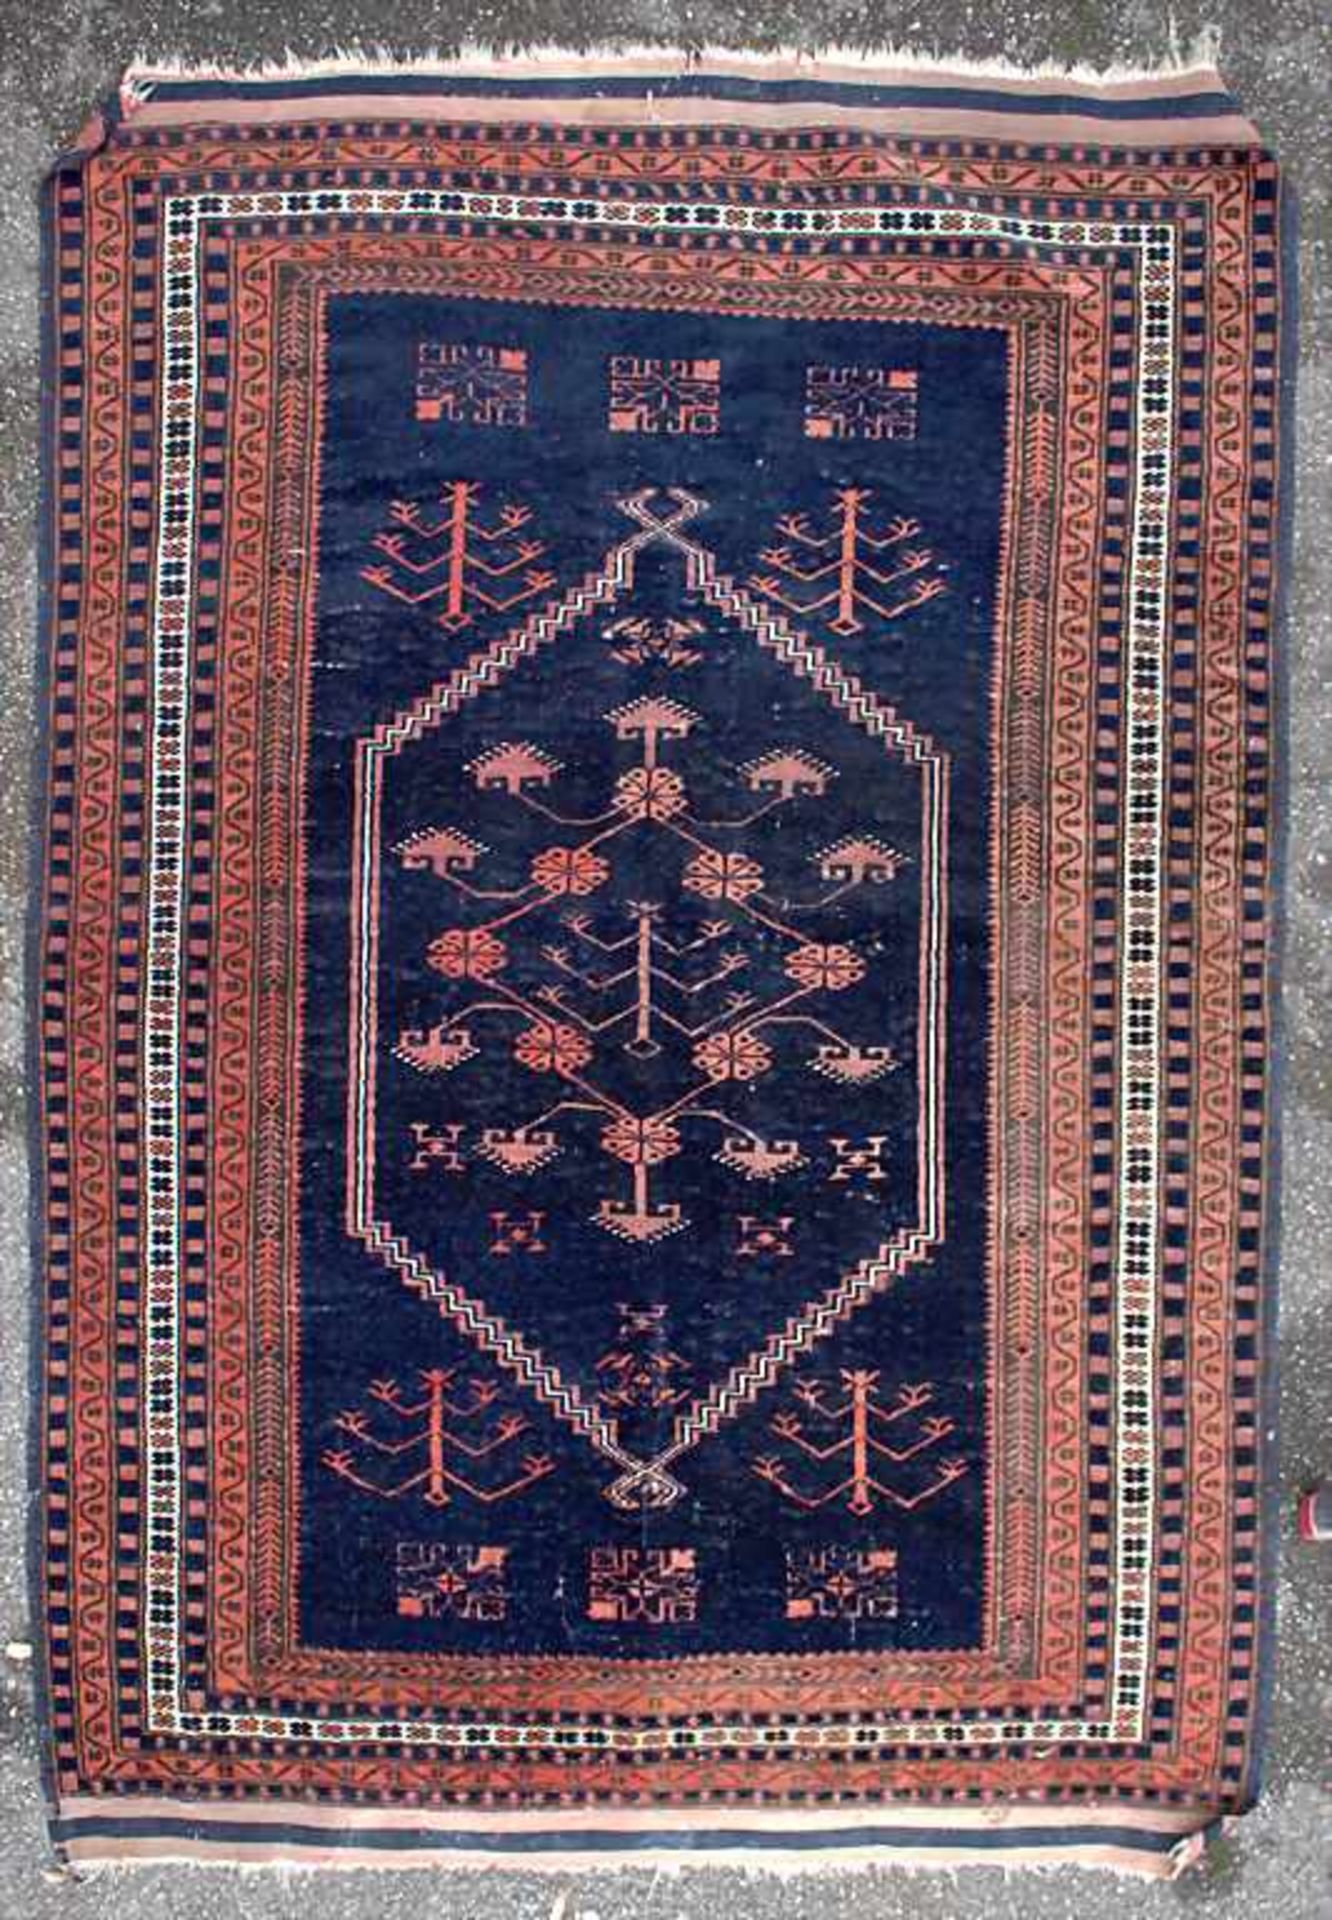 Orientteppich / An oriental carpetMaterial: Wolle auf Baumwolle, Naturfarben, Maße: 160 x 110 cm, - Bild 4 aus 4